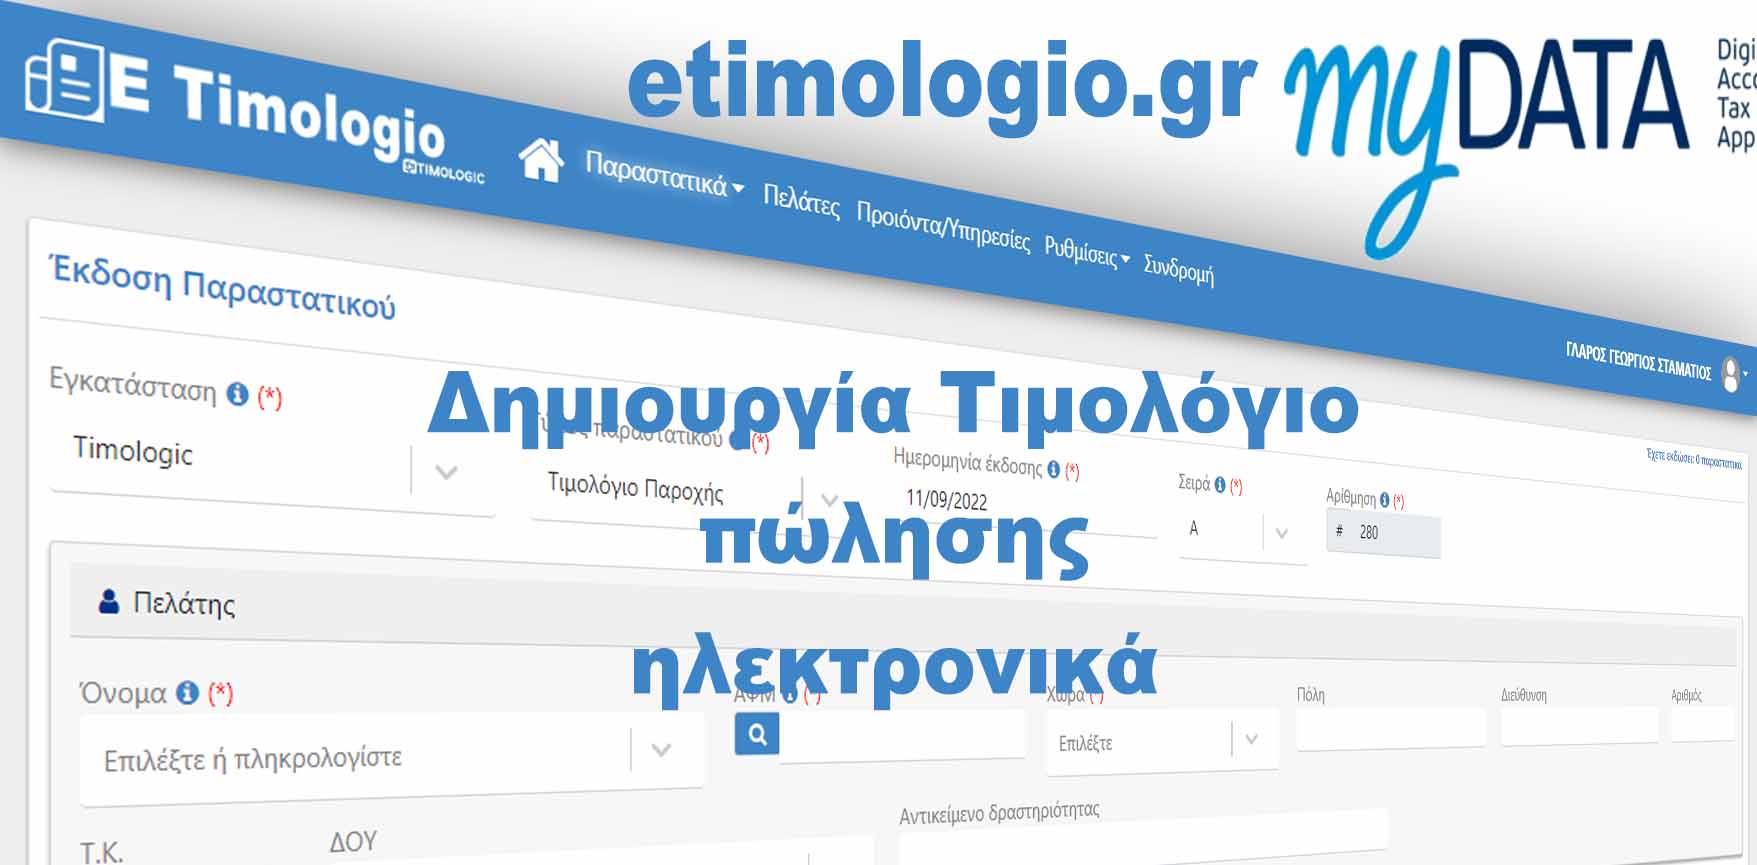 Δημιουργία Τιμολόγιο πώλησης ηλεκτρονικά από την τιμολογιέρα eTimologio